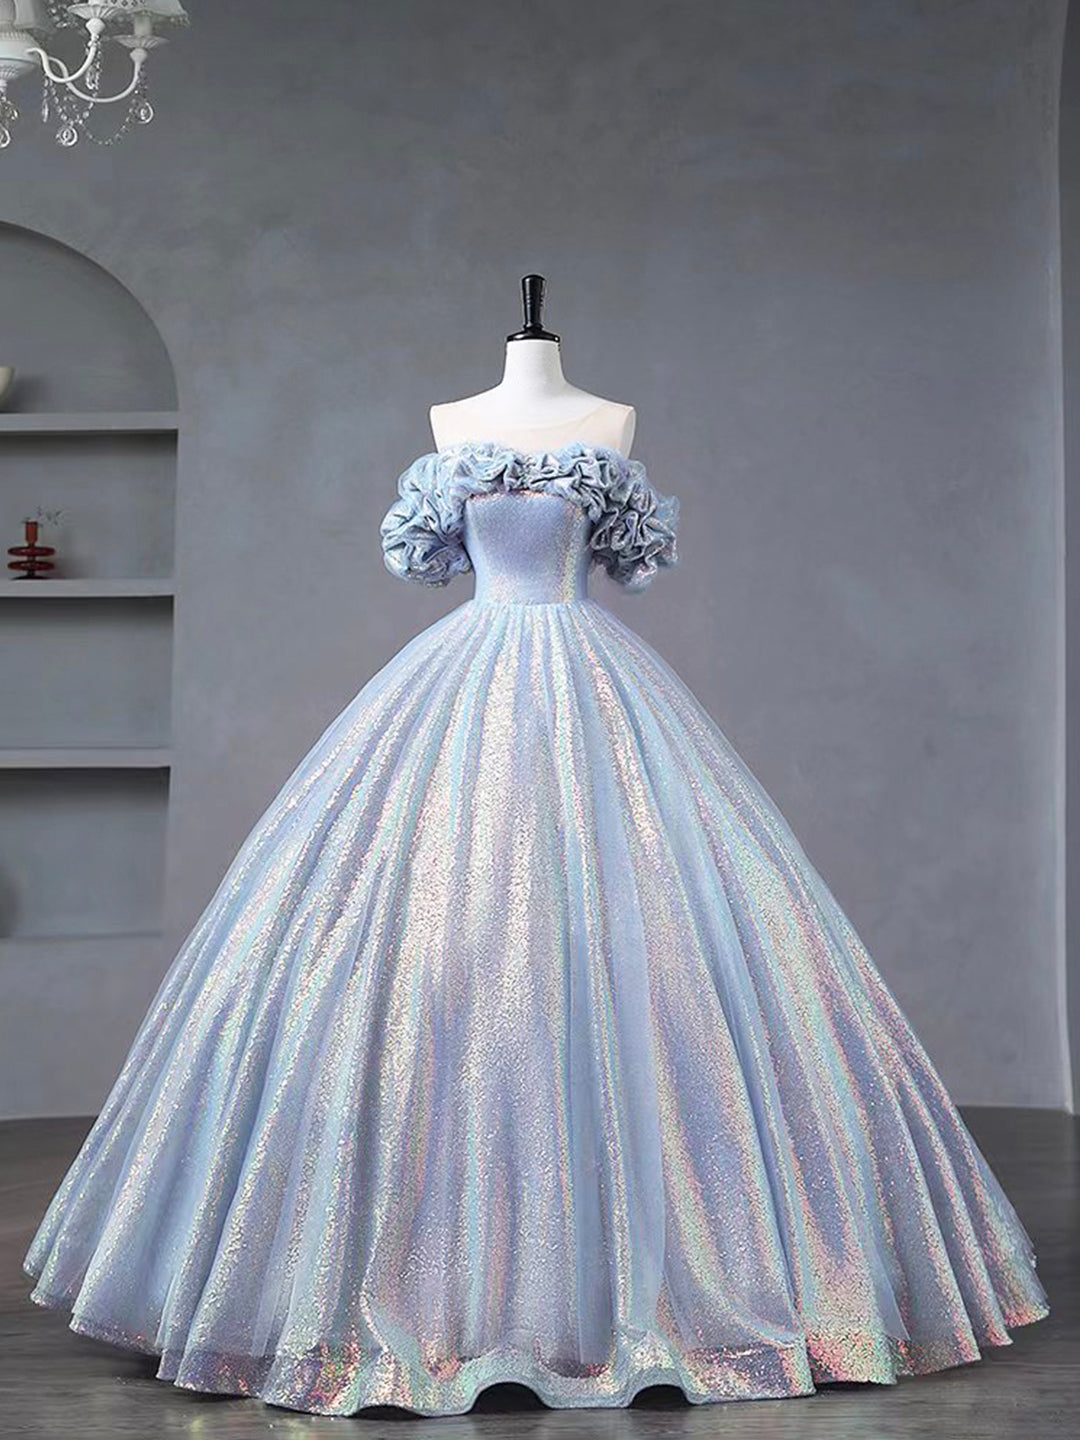 Blue Tulle Sequins Long Formal Dress, Off the Shoulder Princess Dress Sweet 16 Dress